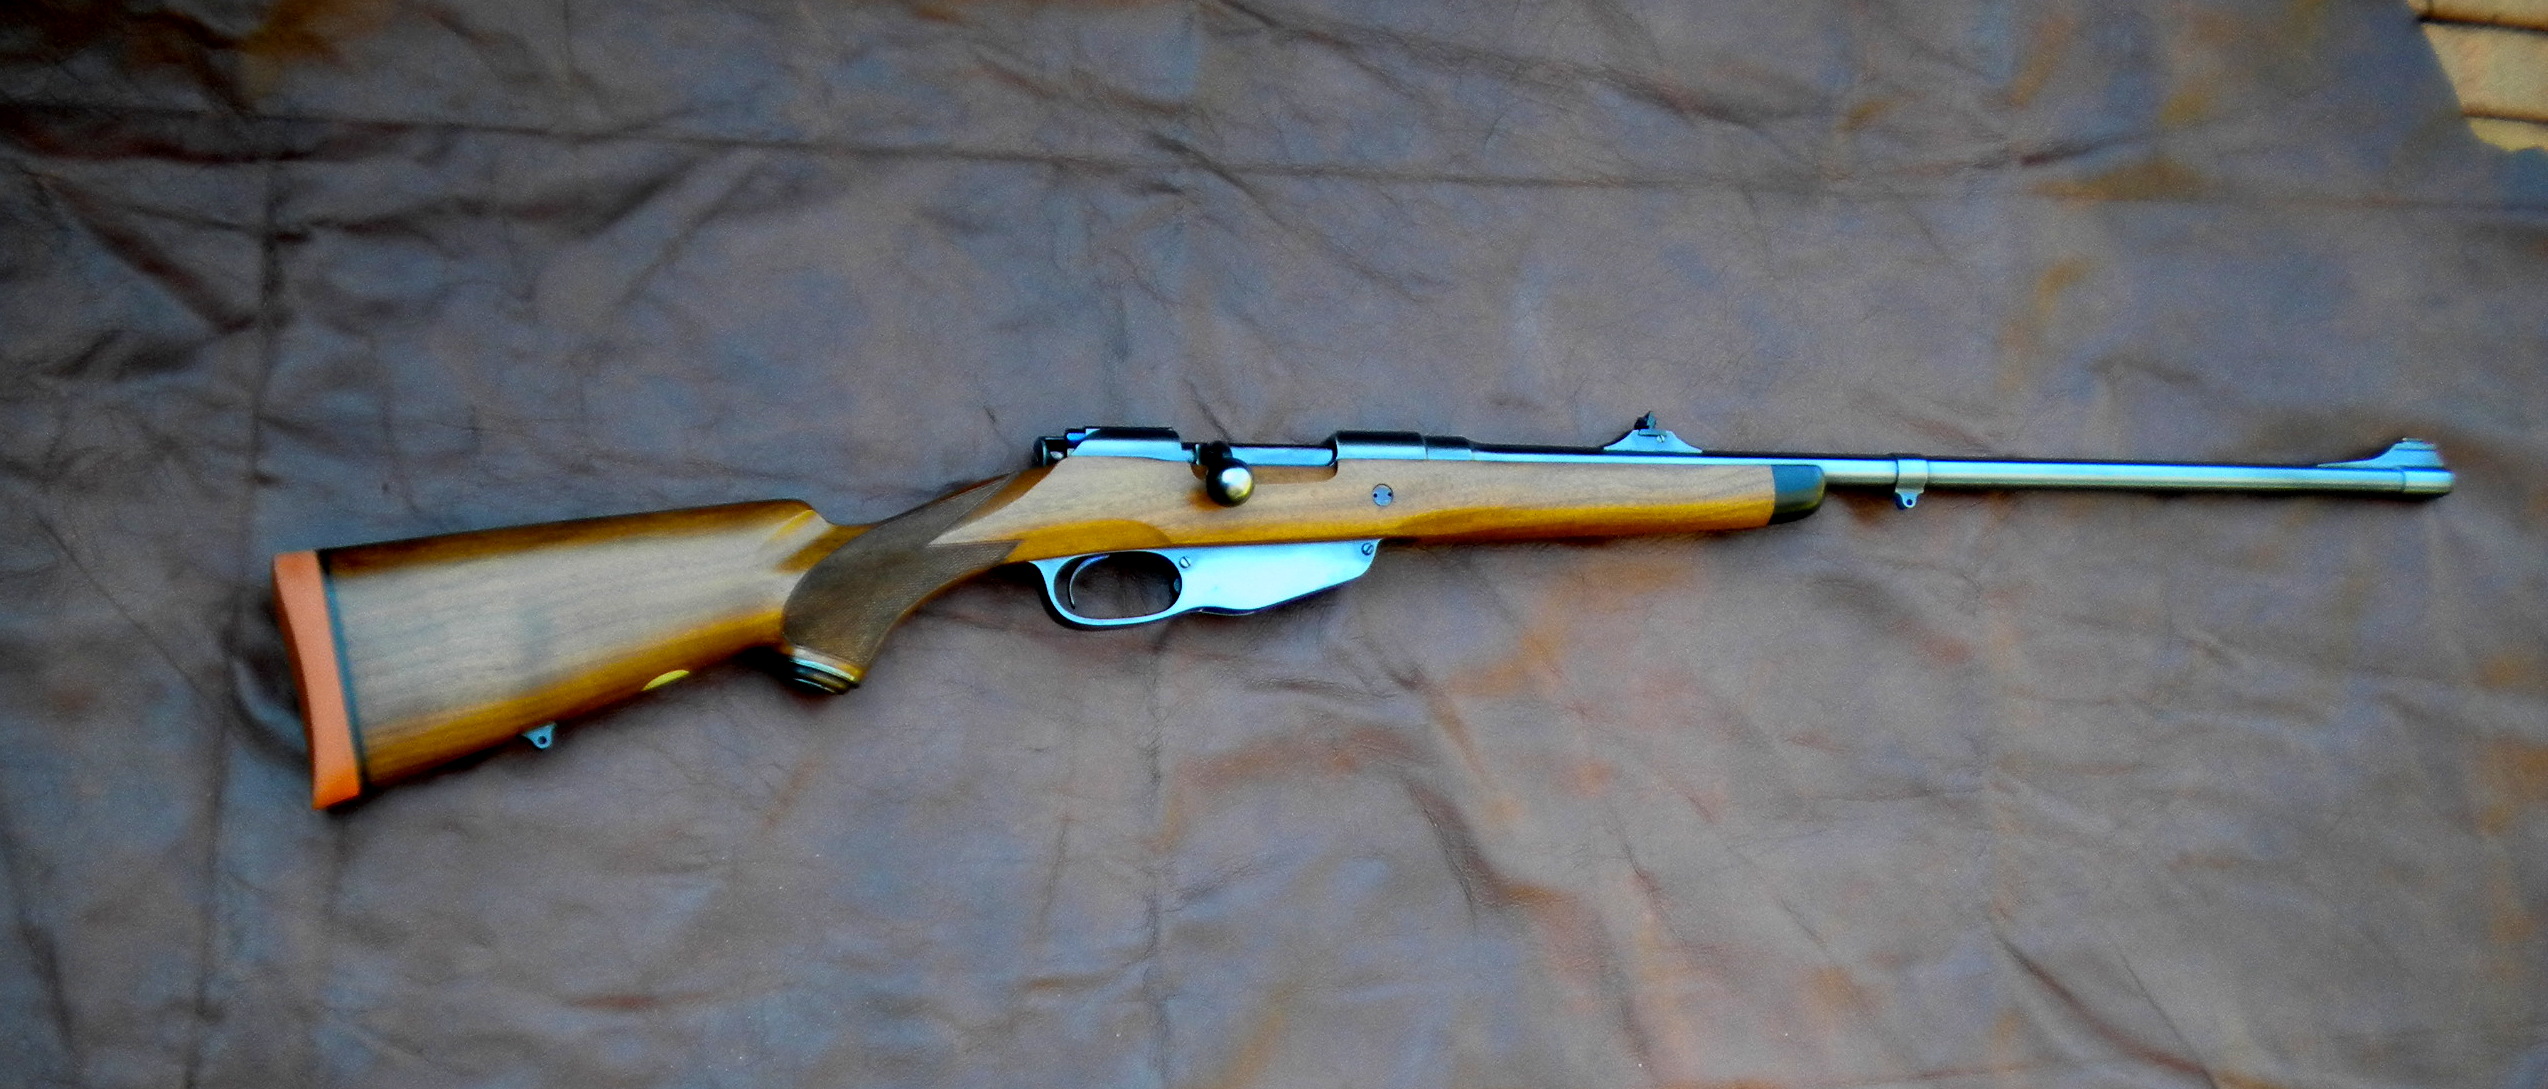 6.5 x54 mannlicher schoenauer rifle for sale